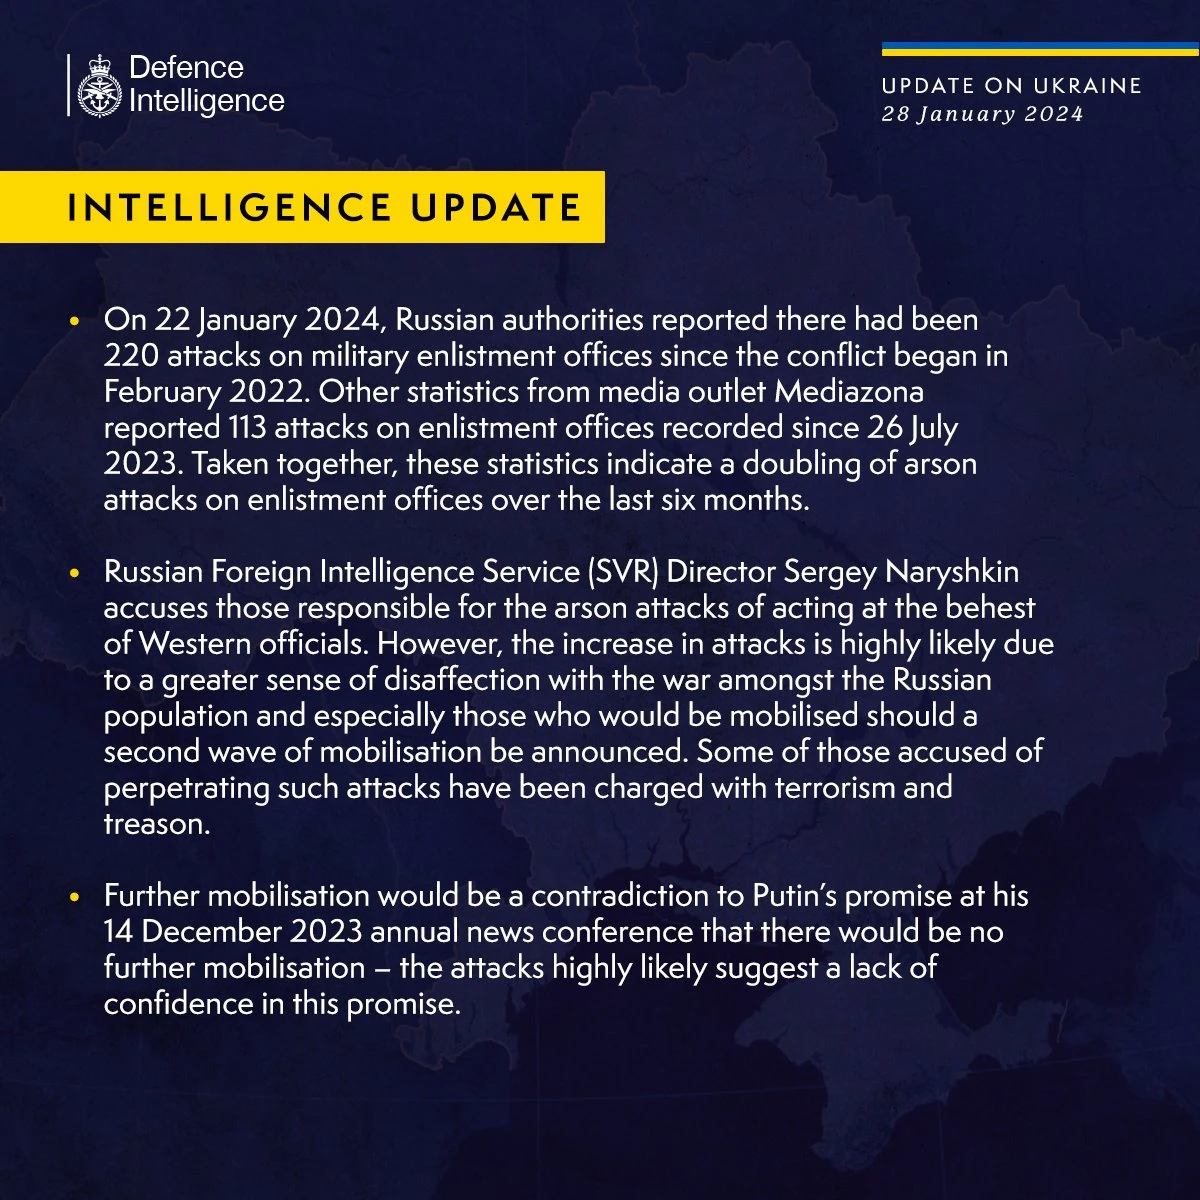 Latest UK Defence Intelligence Update on Ukraine: January 28, 2024